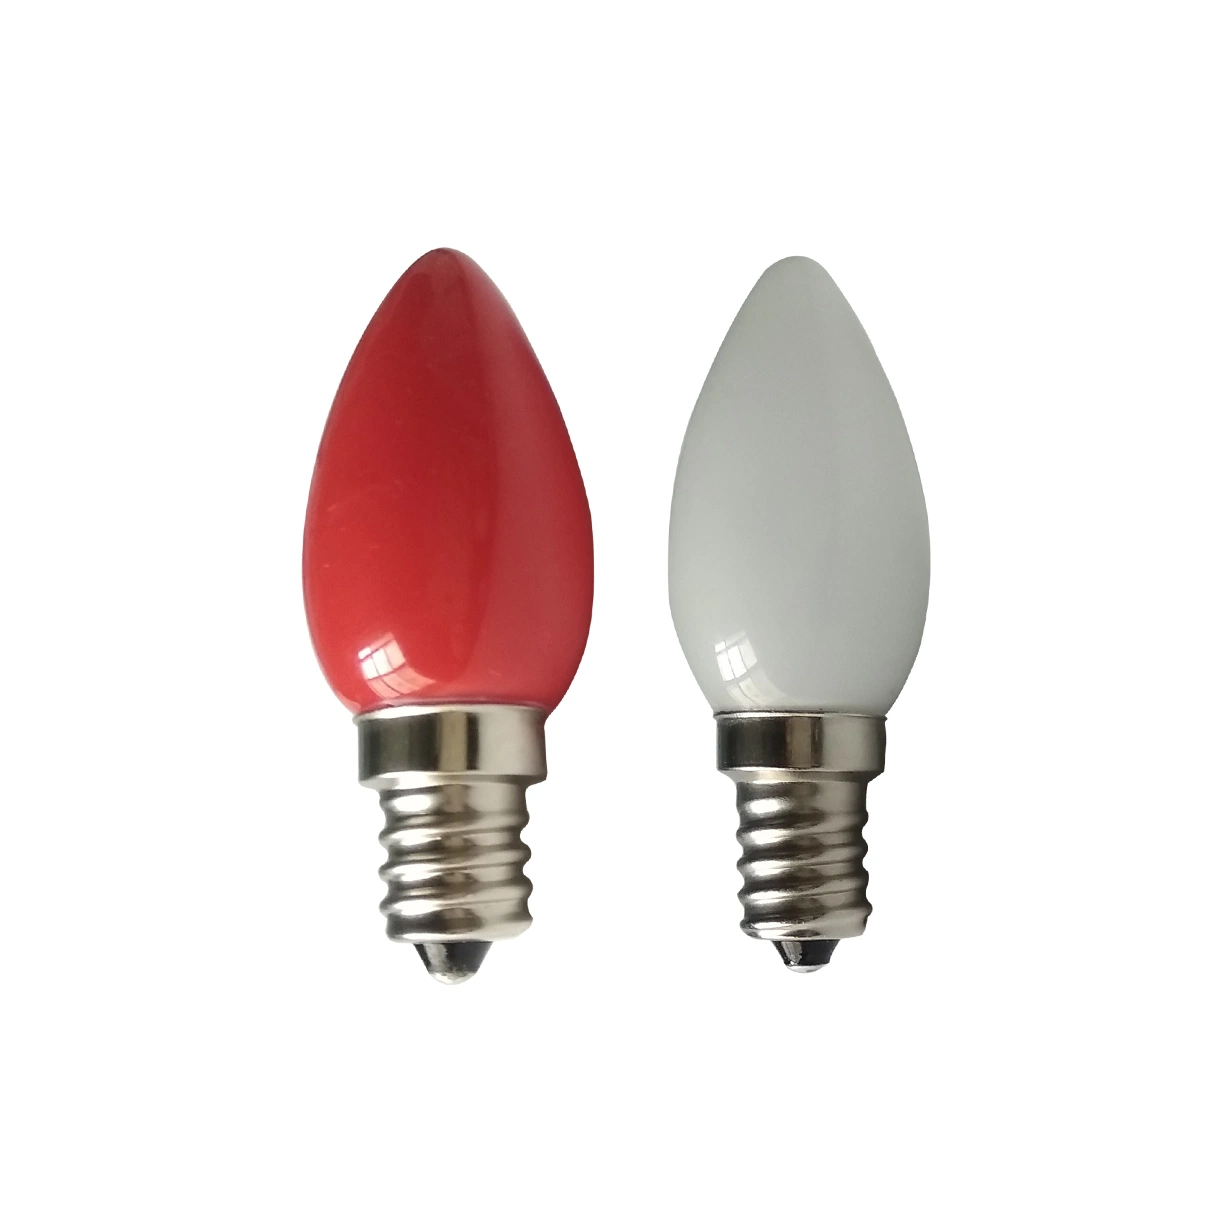 LED C7 E14 220V Mini Glass LED Replace Night Light Christmas Decoration Dimmable 0.5W Filament LED Bulb